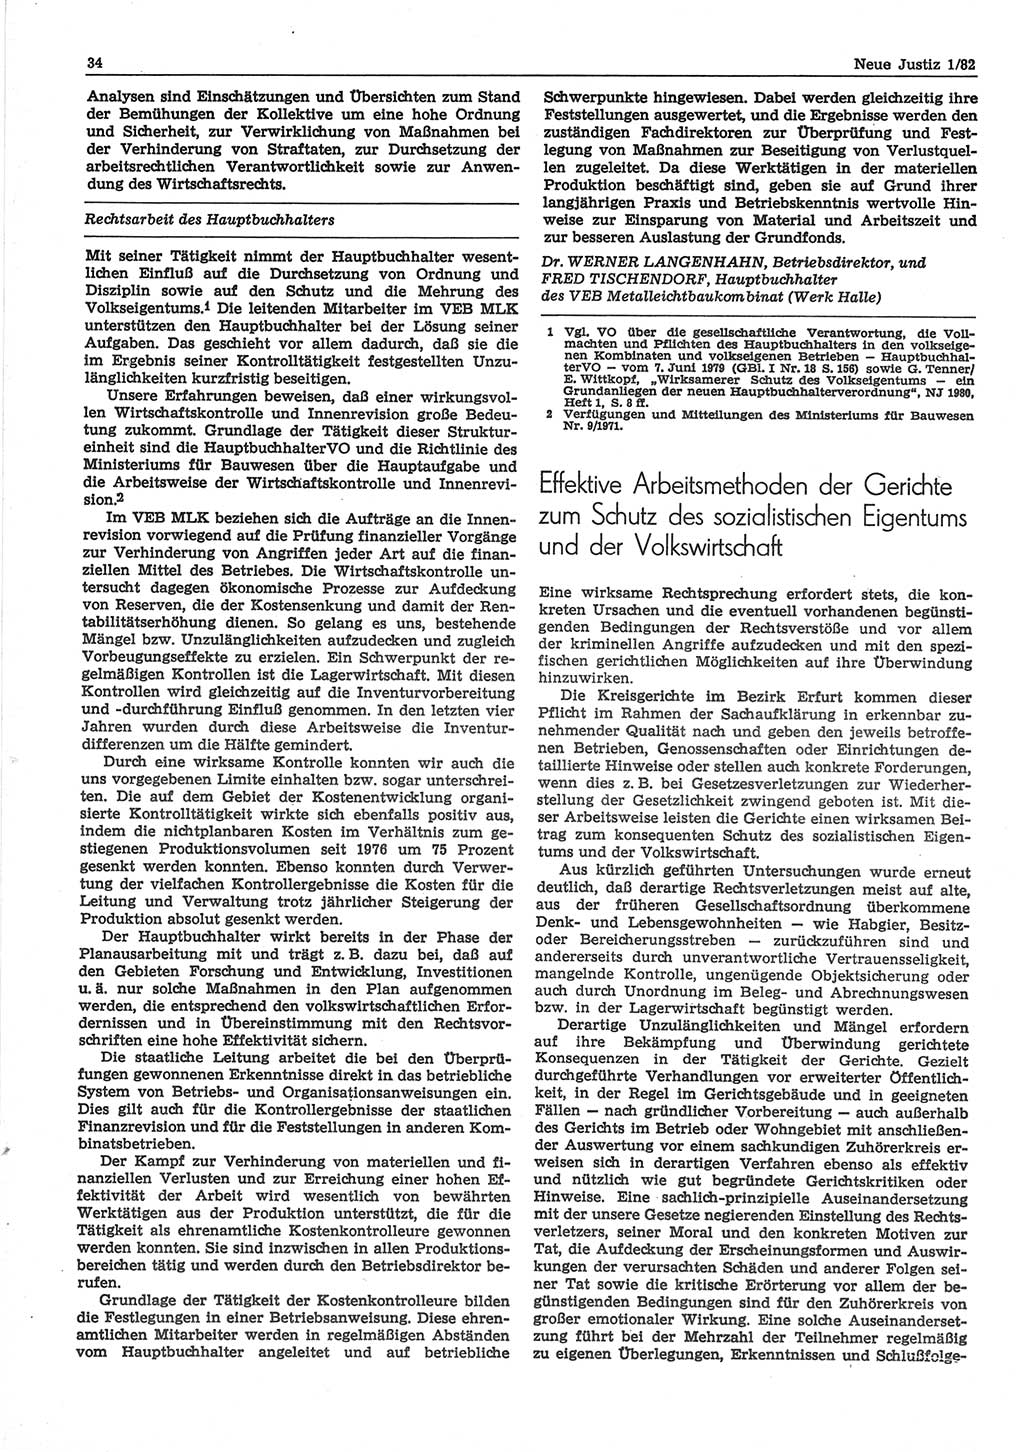 Neue Justiz (NJ), Zeitschrift für sozialistisches Recht und Gesetzlichkeit [Deutsche Demokratische Republik (DDR)], 36. Jahrgang 1982, Seite 34 (NJ DDR 1982, S. 34)